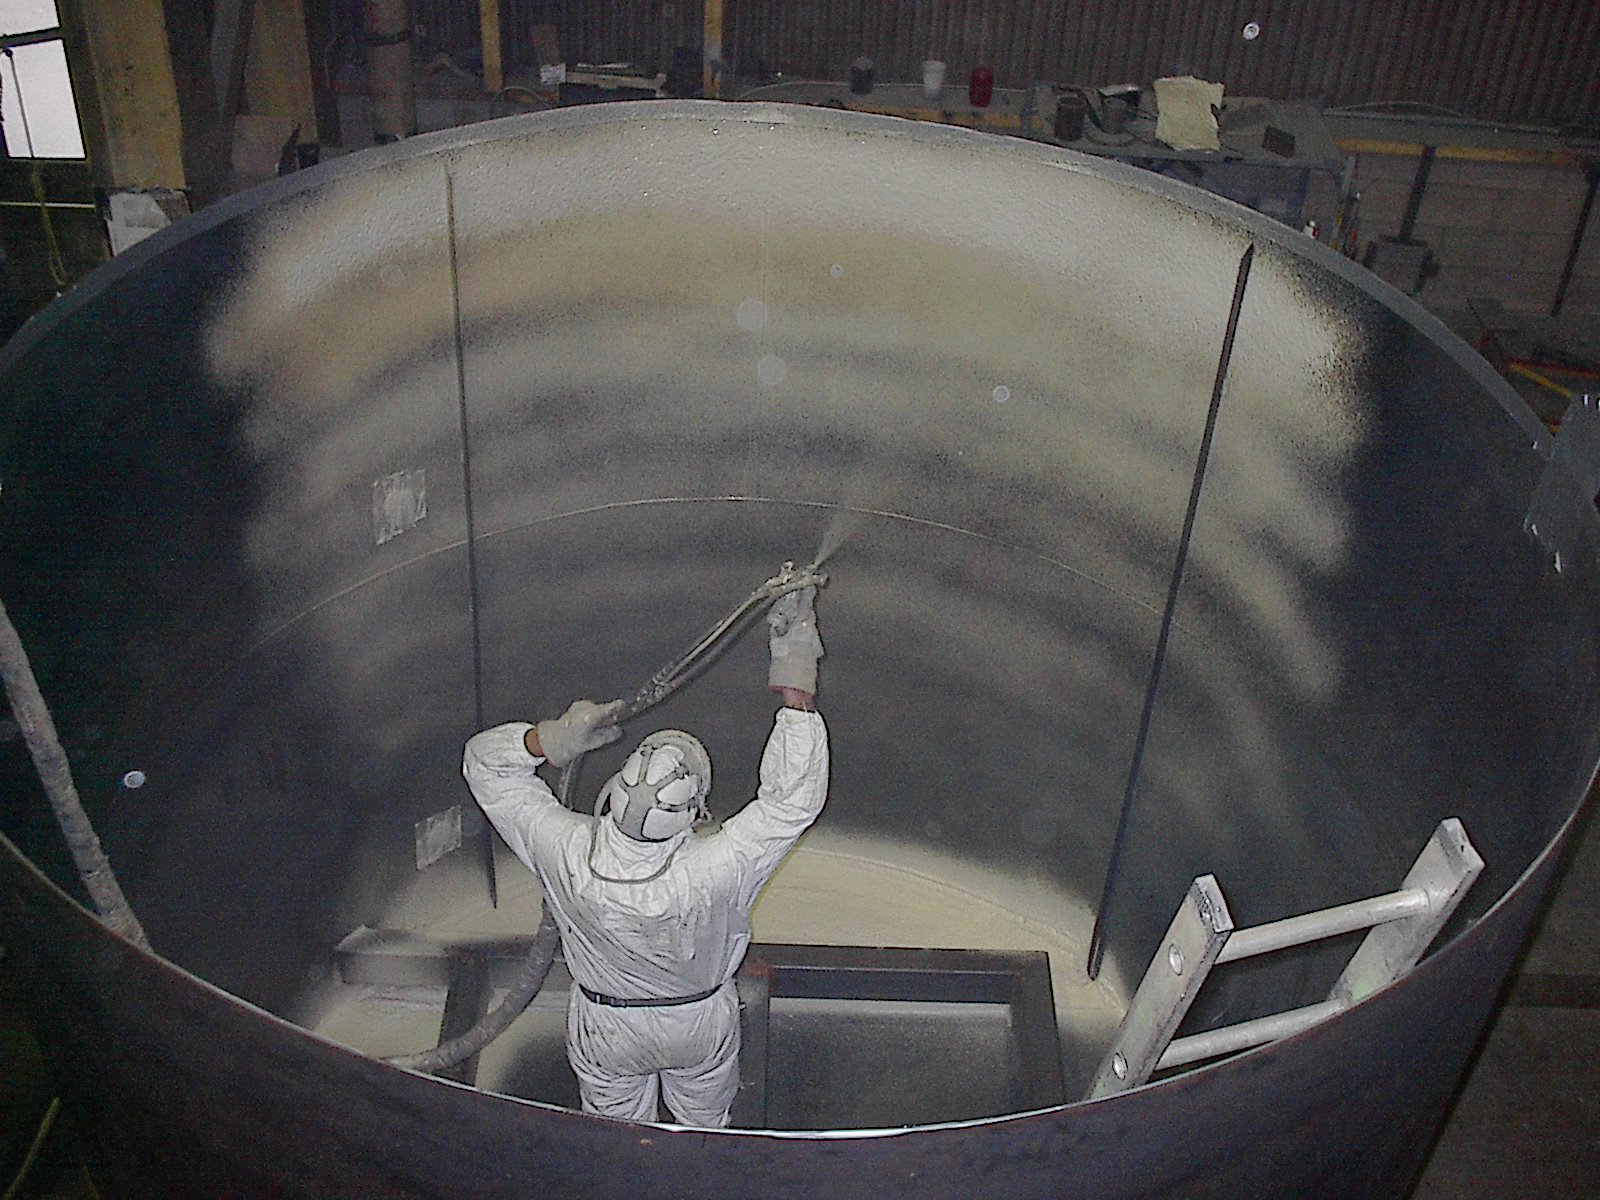 Applying foam to the inside of a tank